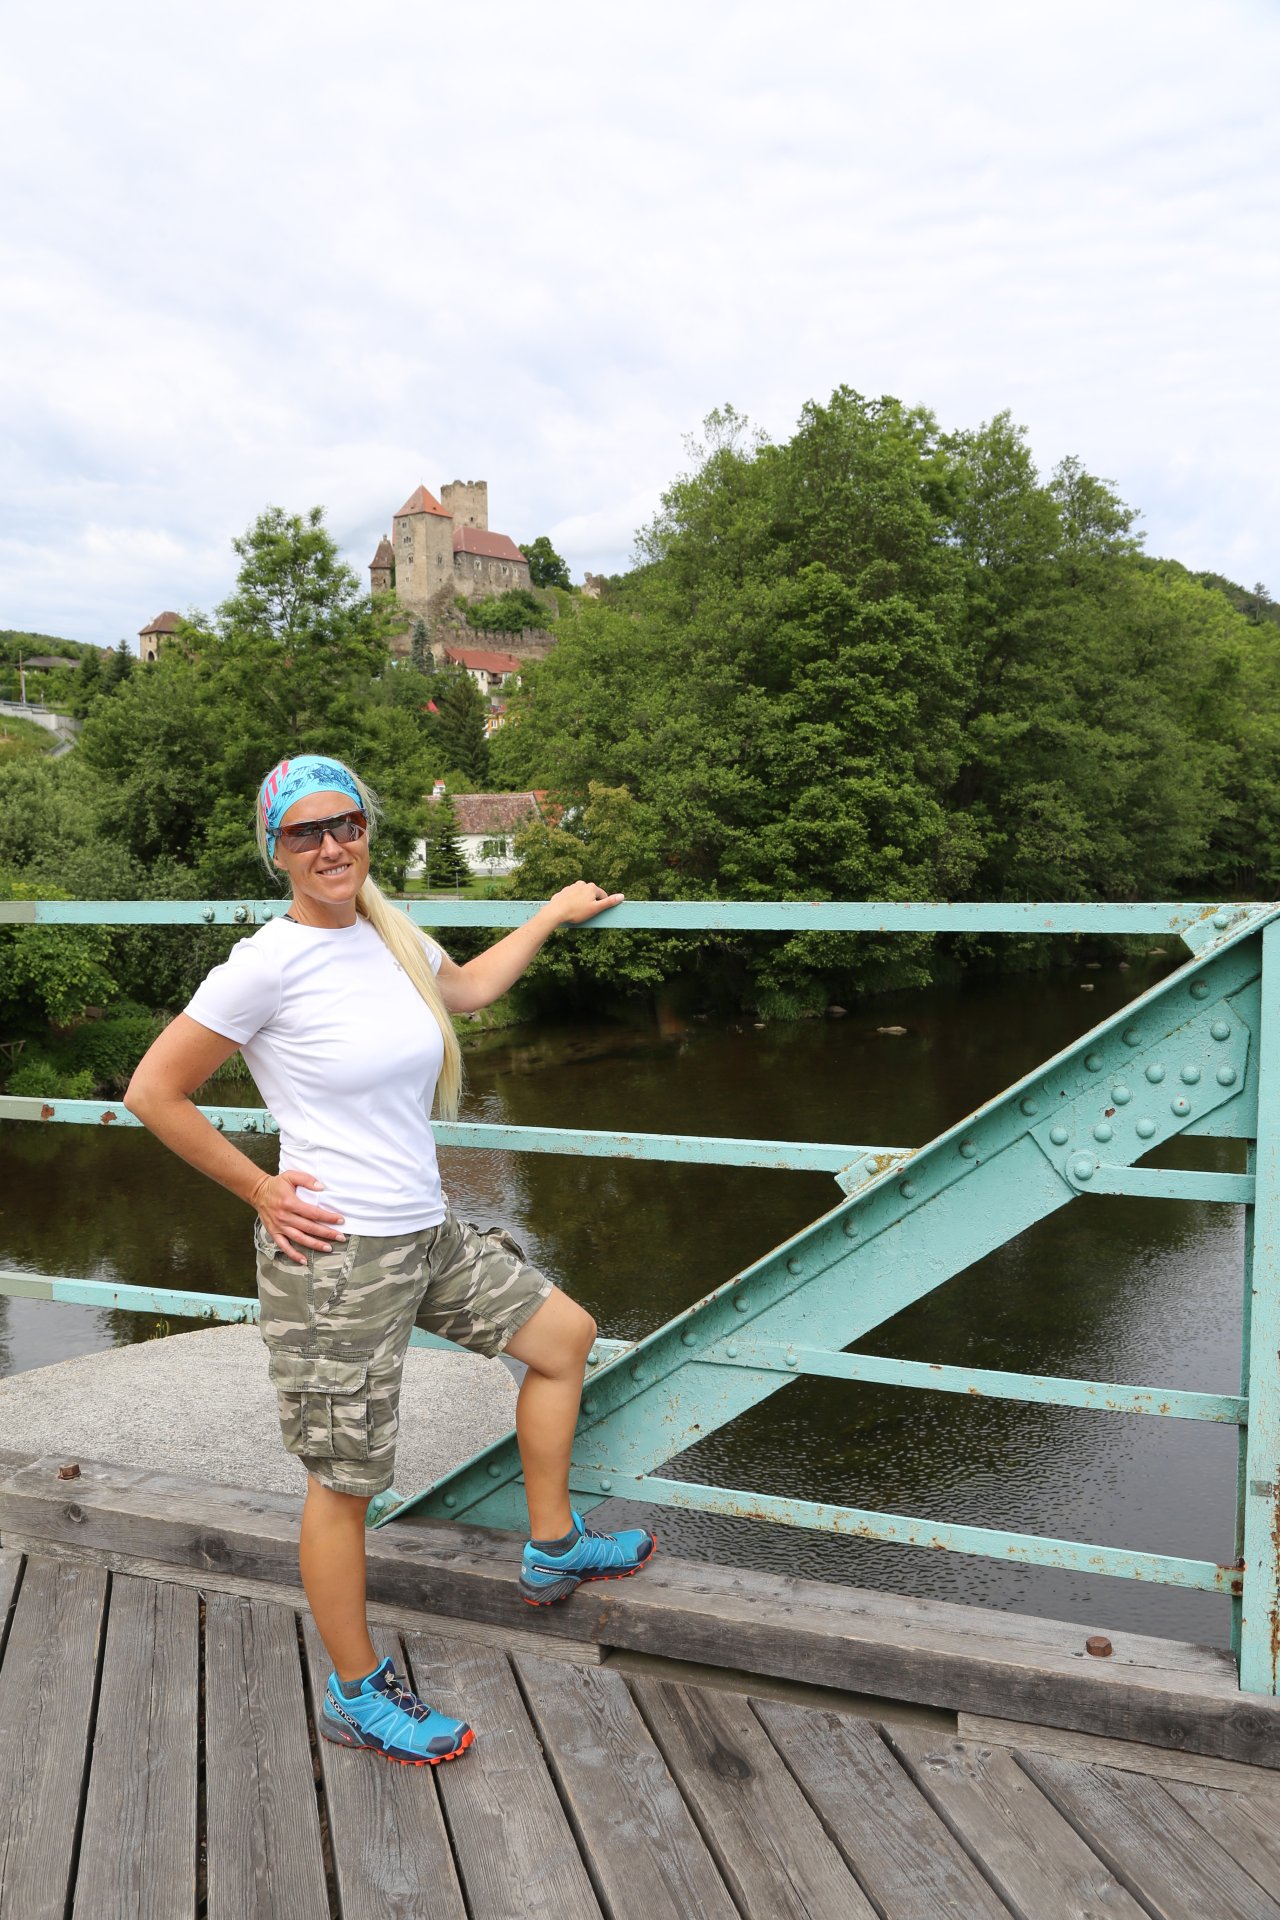 Diese Brücke zeigt mir meine Grenzen auf - Geländer, Nationalpark Thayatal, Personen, Thayatal - WEISSINGER Sofia - (Hardegg, Niederösterreich, Österreich)